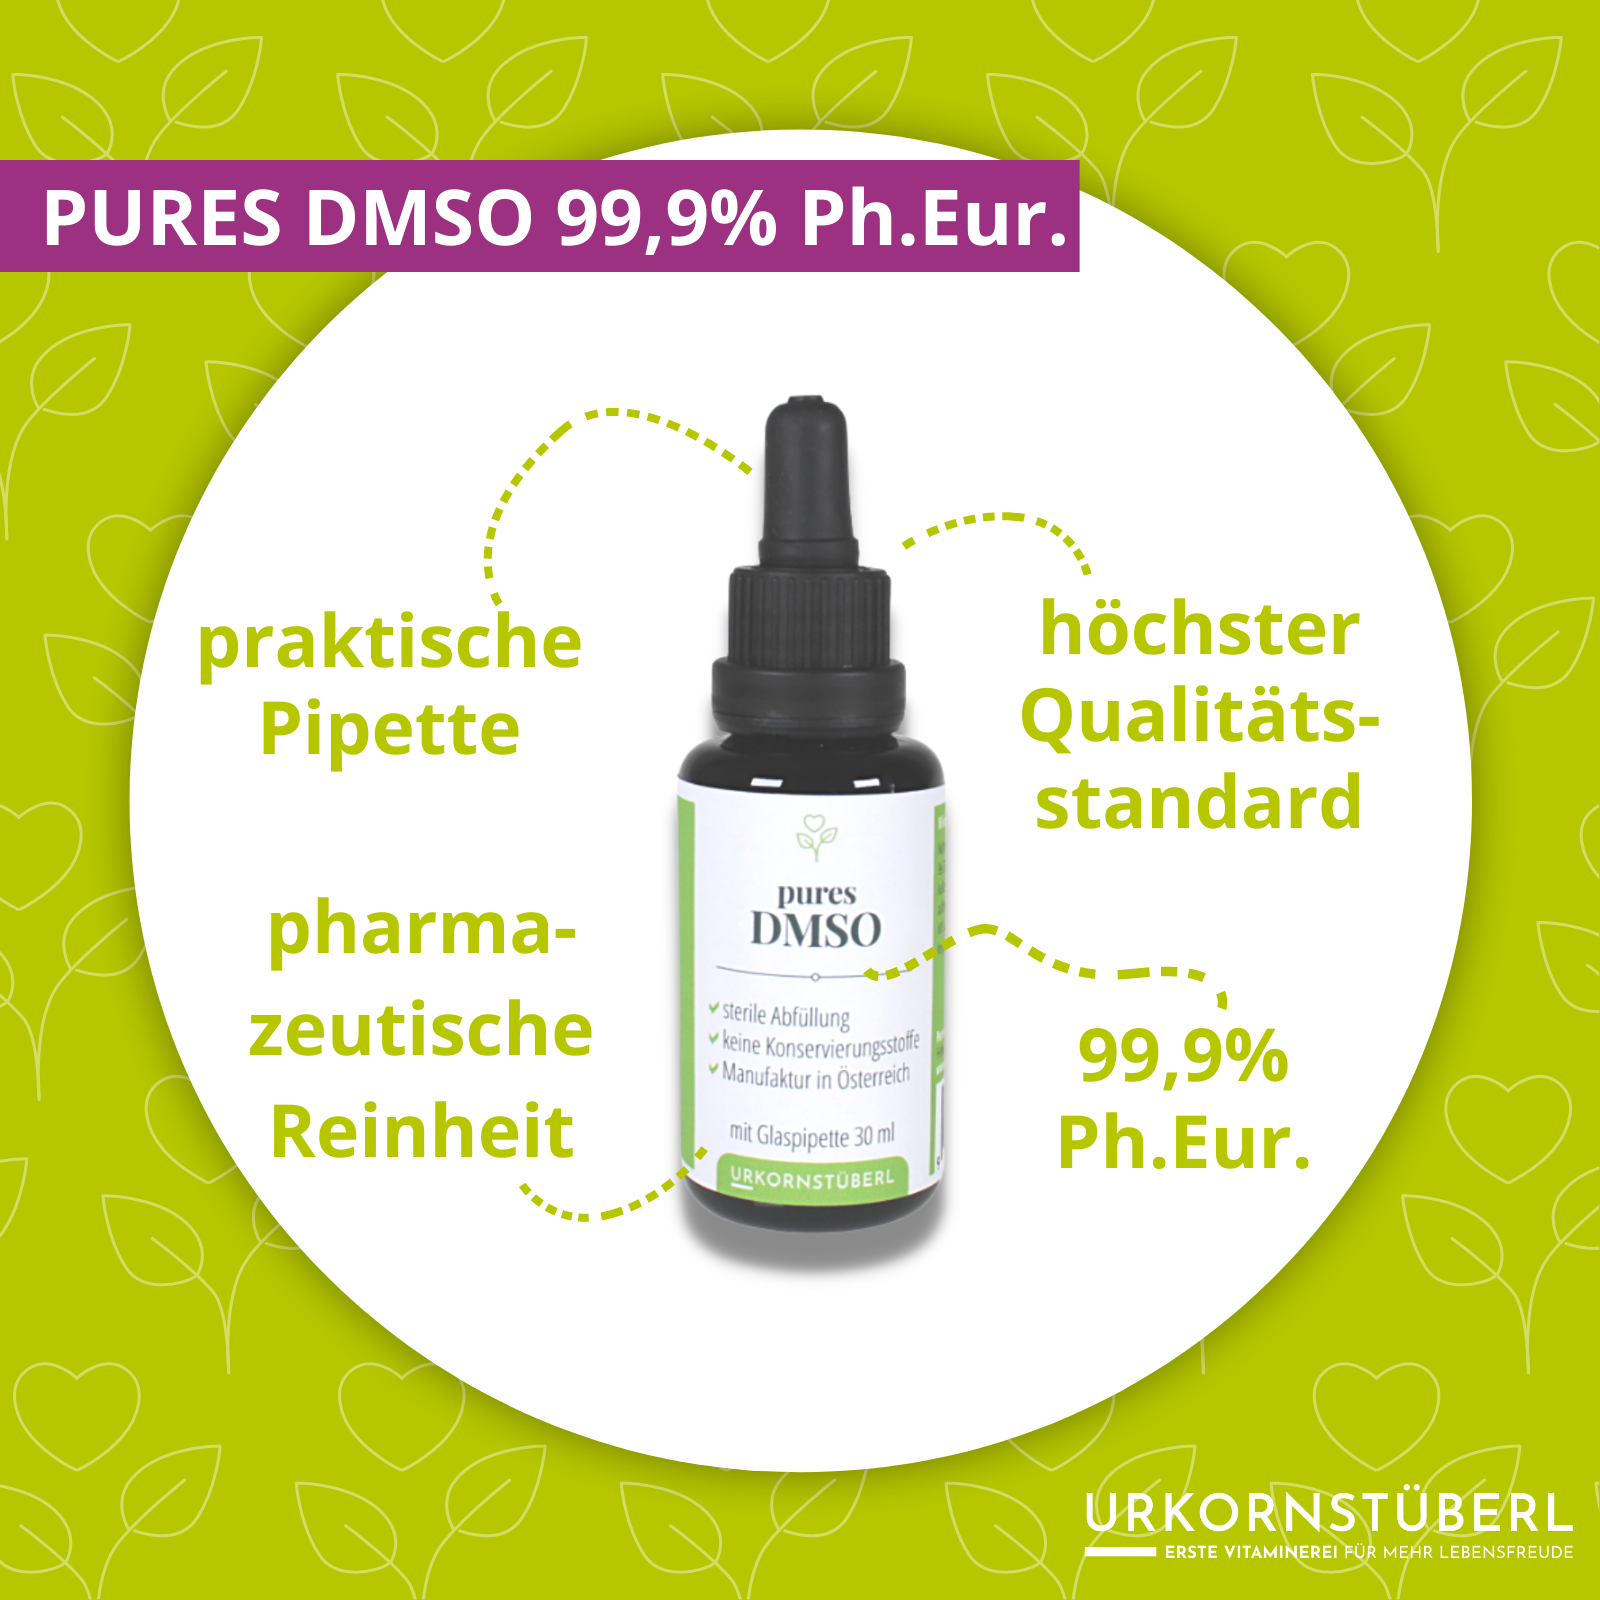 pures DMSO 99,9% Ph.Eur. höchster Qualitätsstandard - pharmazeutische Reinheit